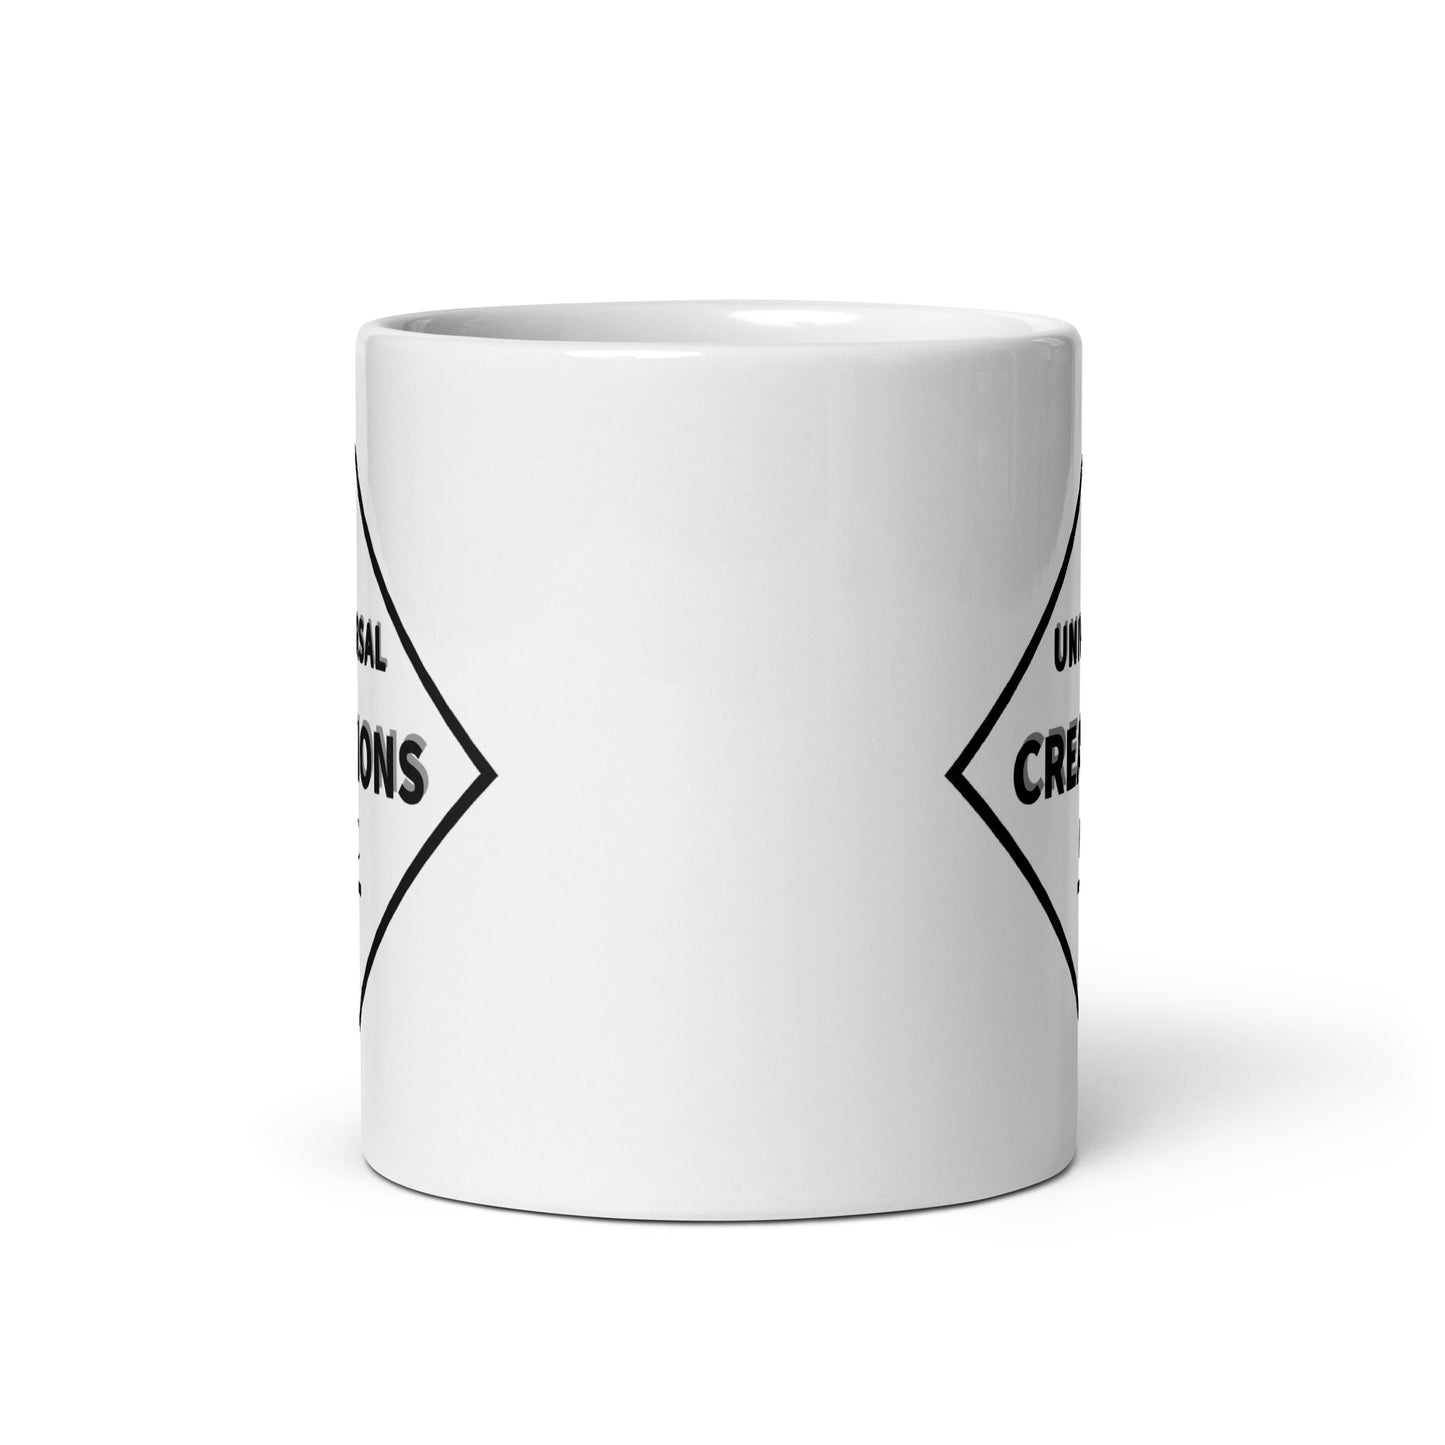 U.C logo White glossy mug